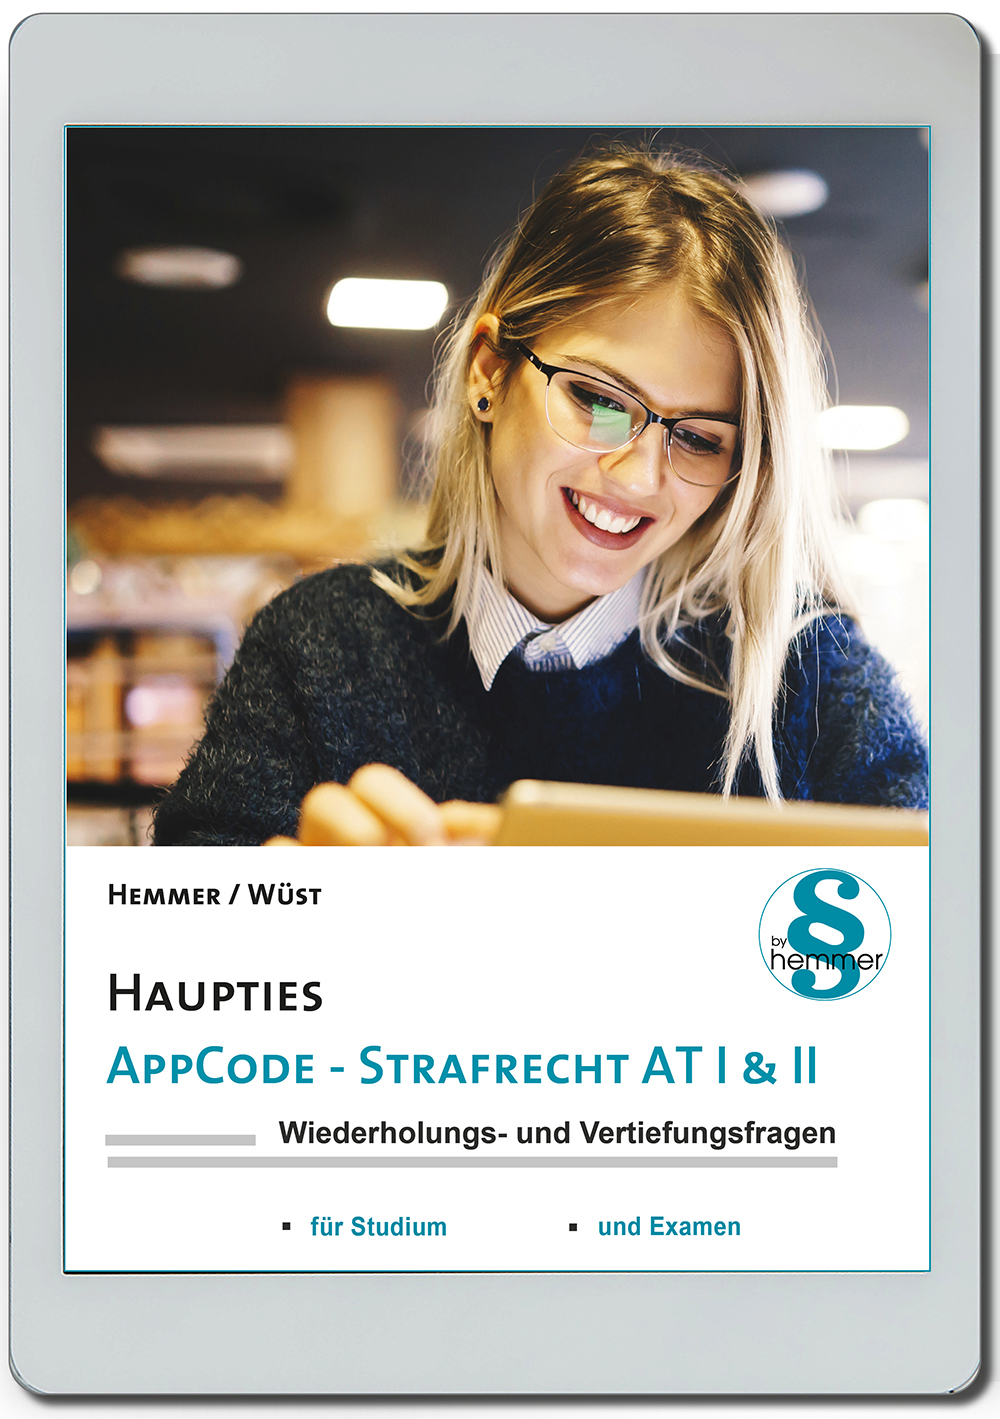 AppCode - haupties - Strafrecht AT I & II